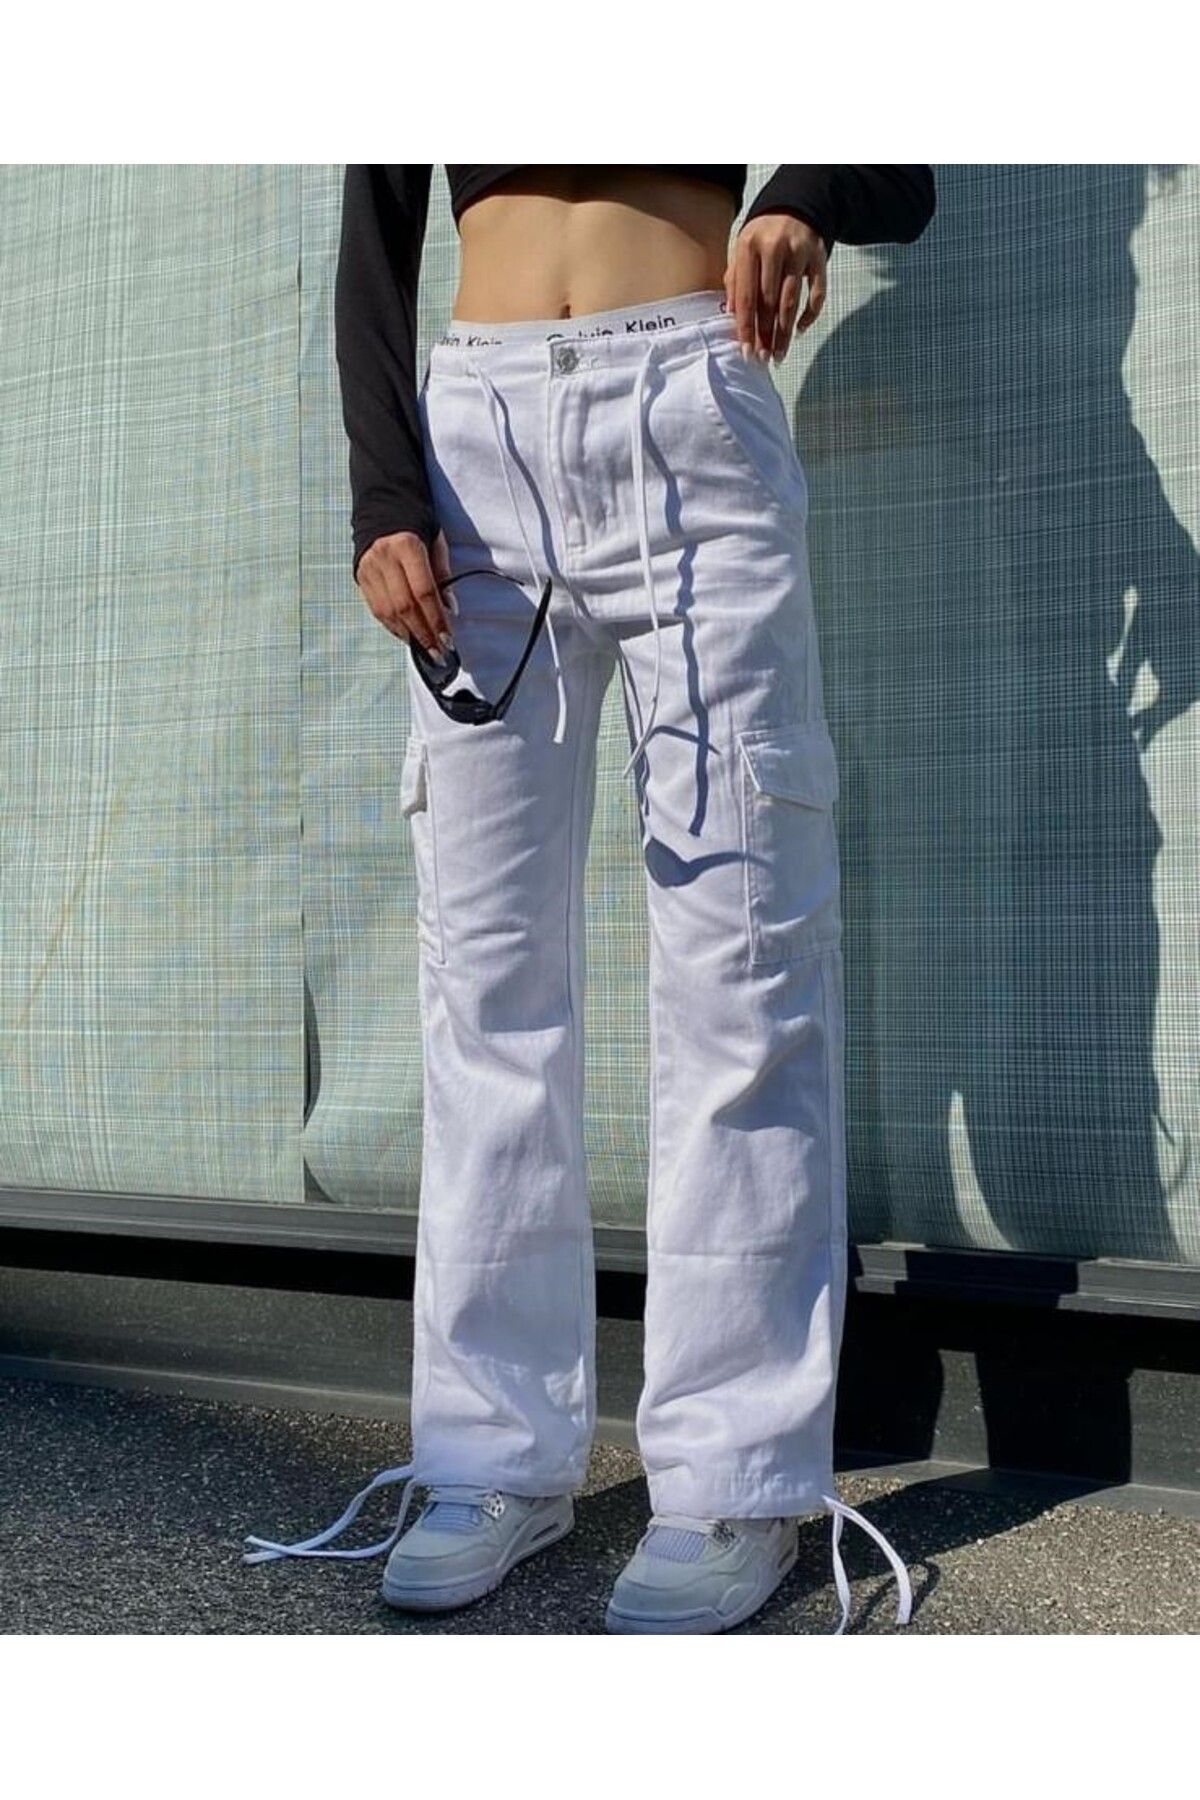 Gofeel Unisex Cargo Pocket Relaxed Beyaz Renkli Bel ve Paça Bağcıklı Pantolon Ordini